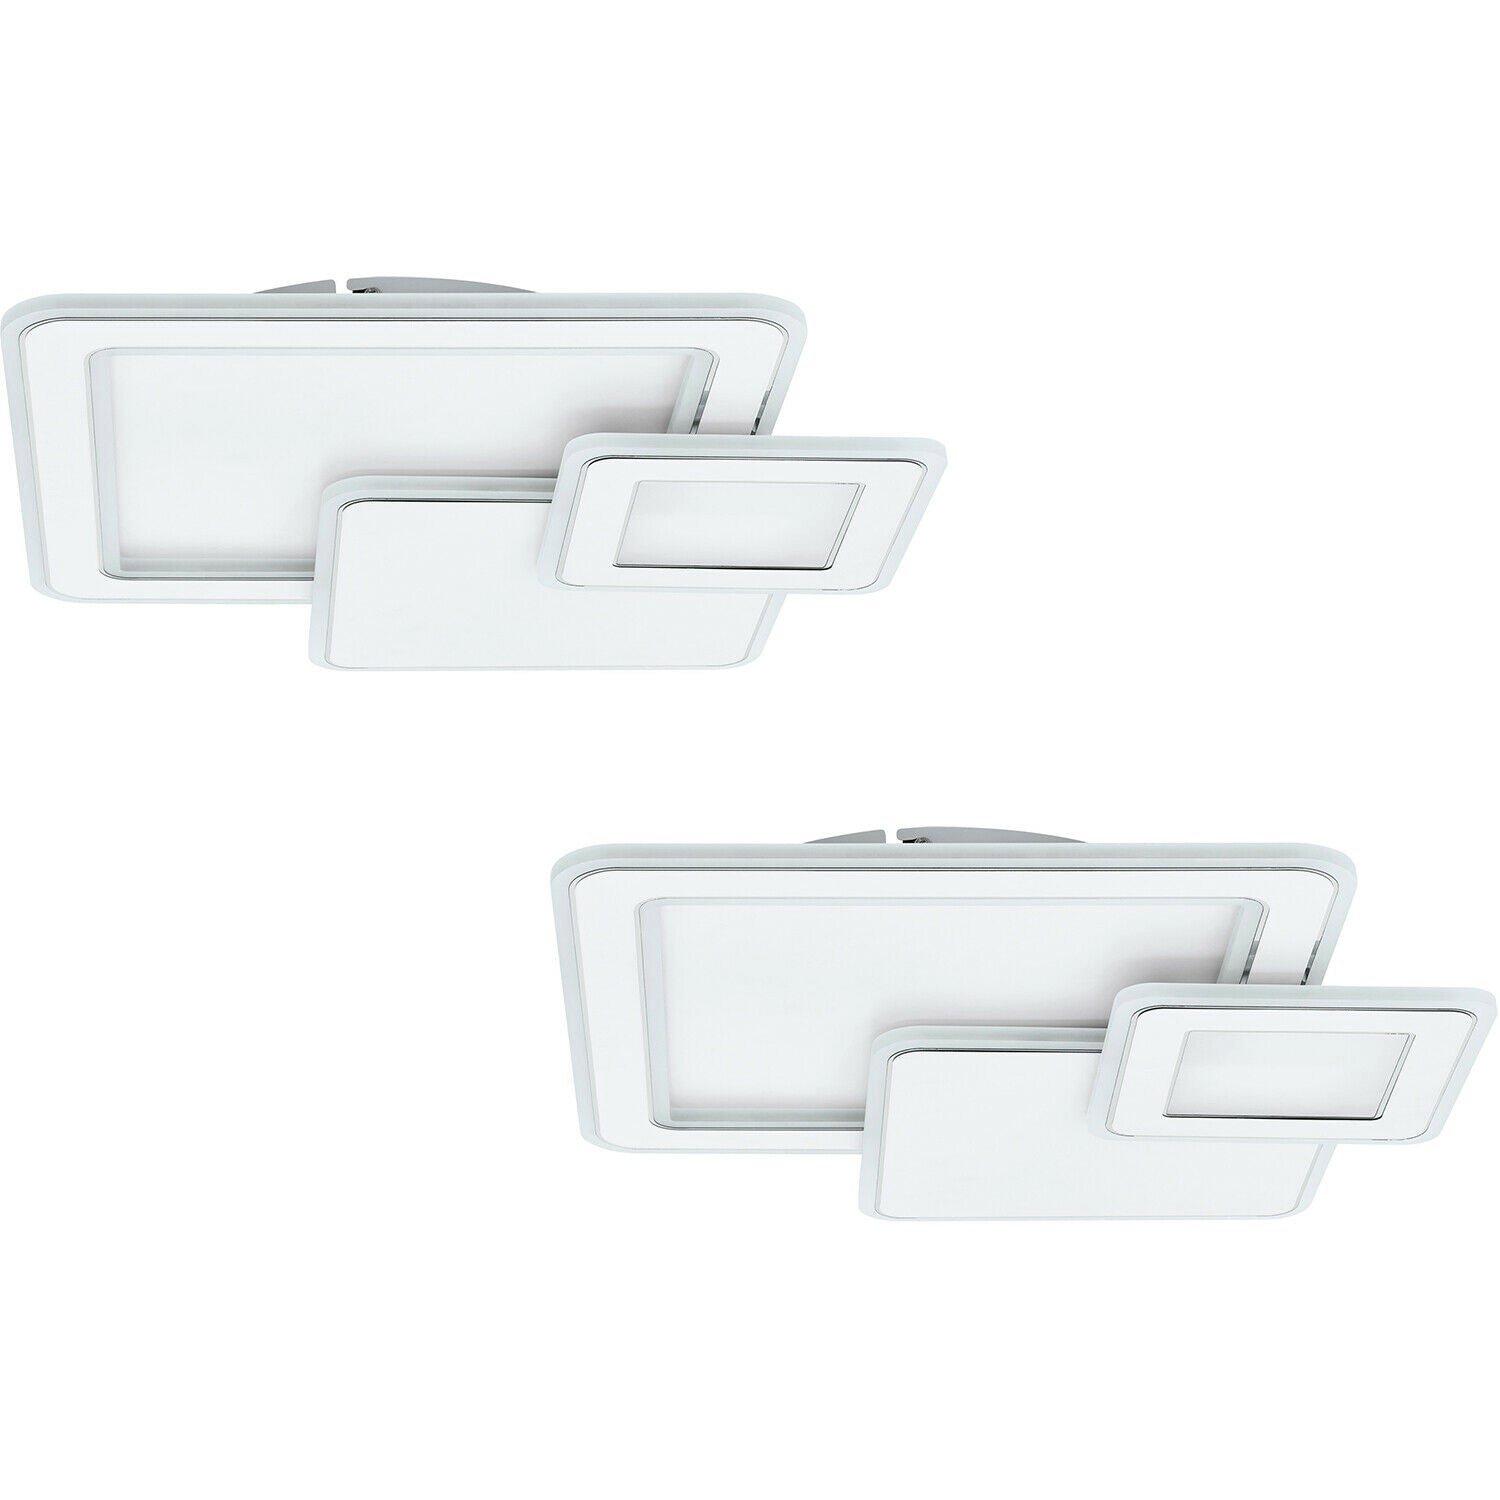 2 PACK Wall Flush Ceiling Light Colour White Chrome Shade White Plastic LED 50W